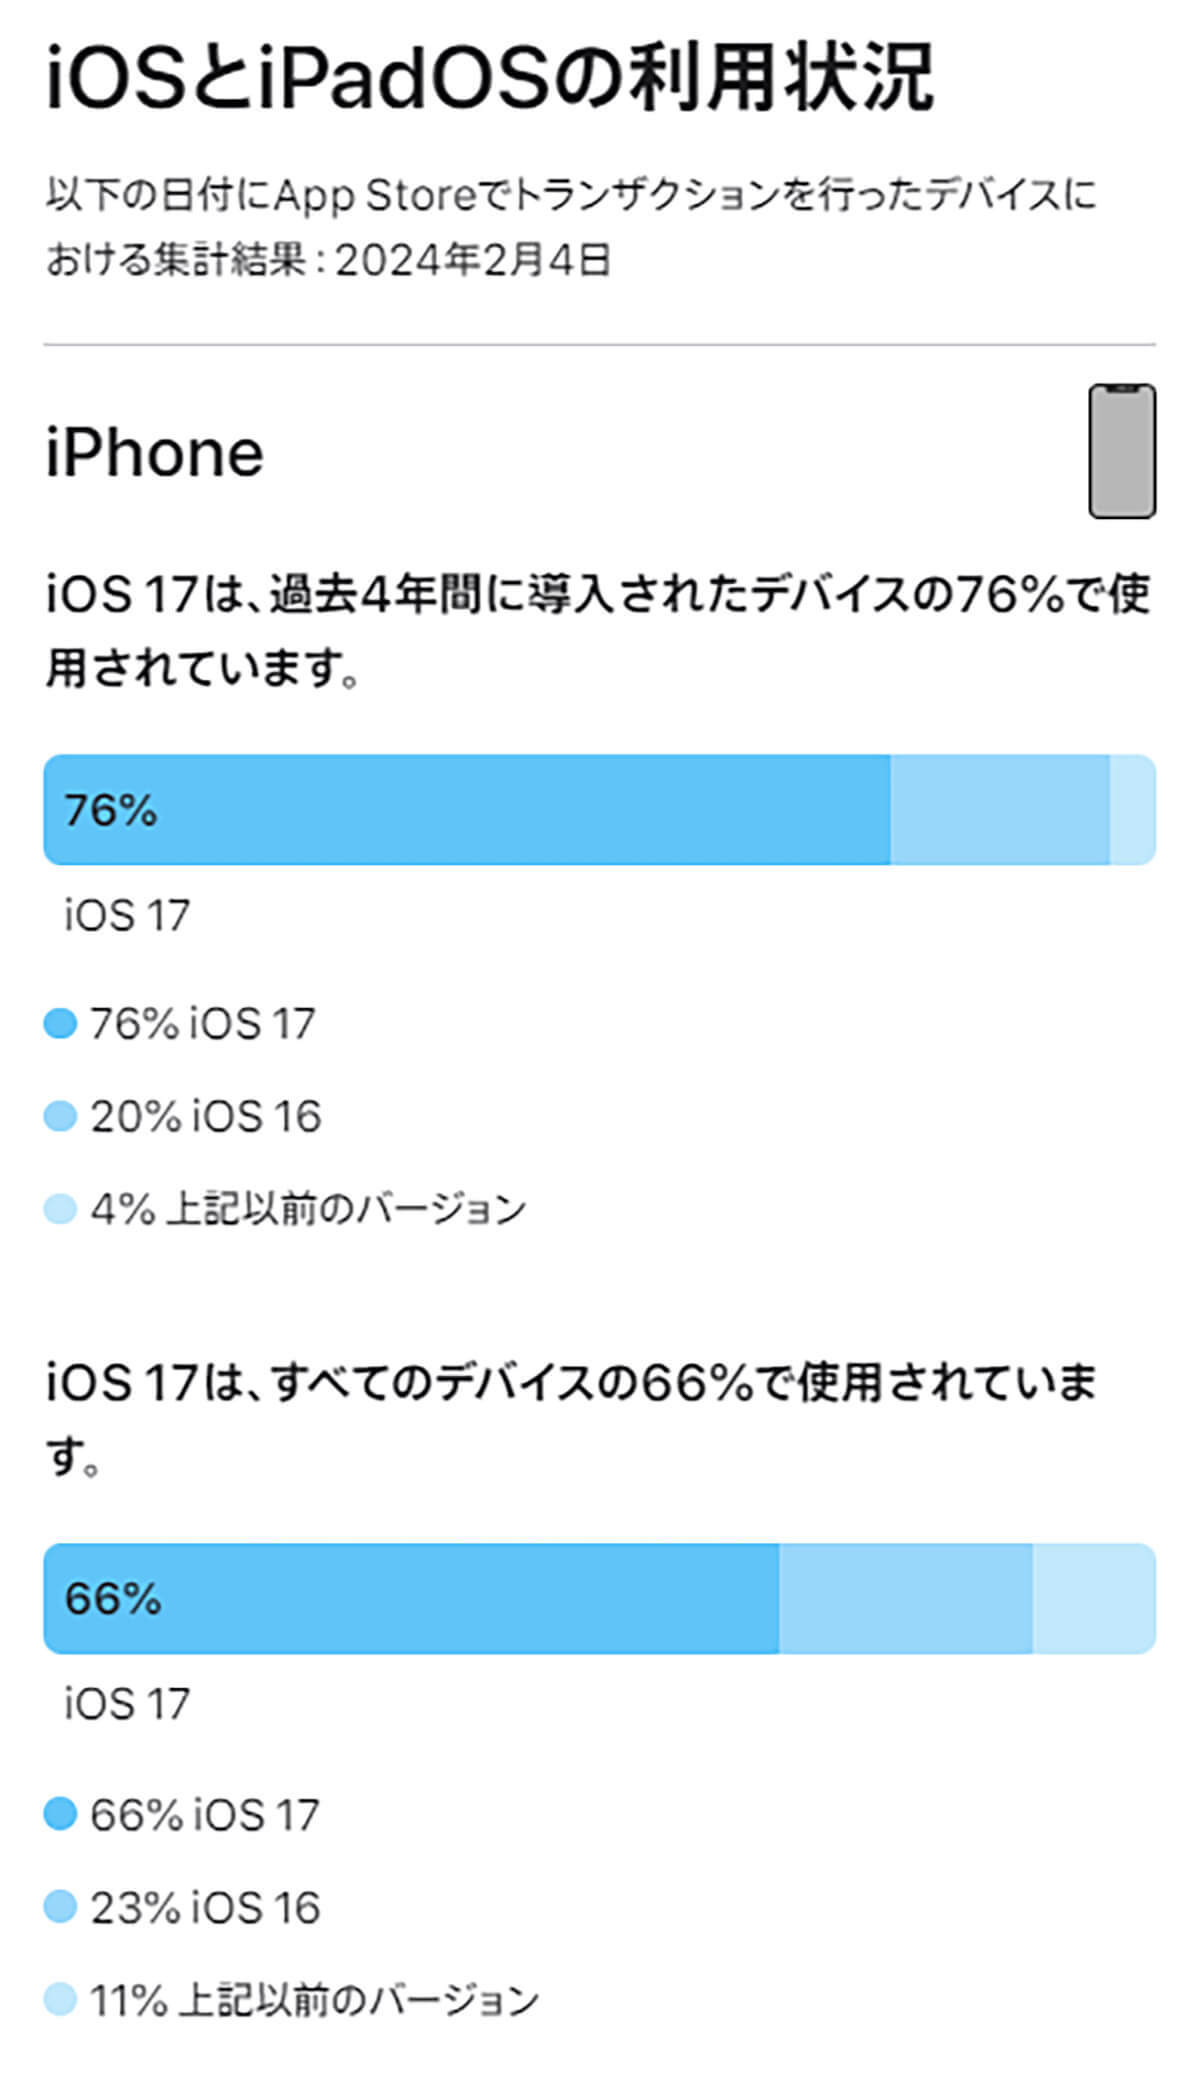 iOS 17、インストール率は76％!? iPadOS 17はさらに低い…低利用率の要因は?